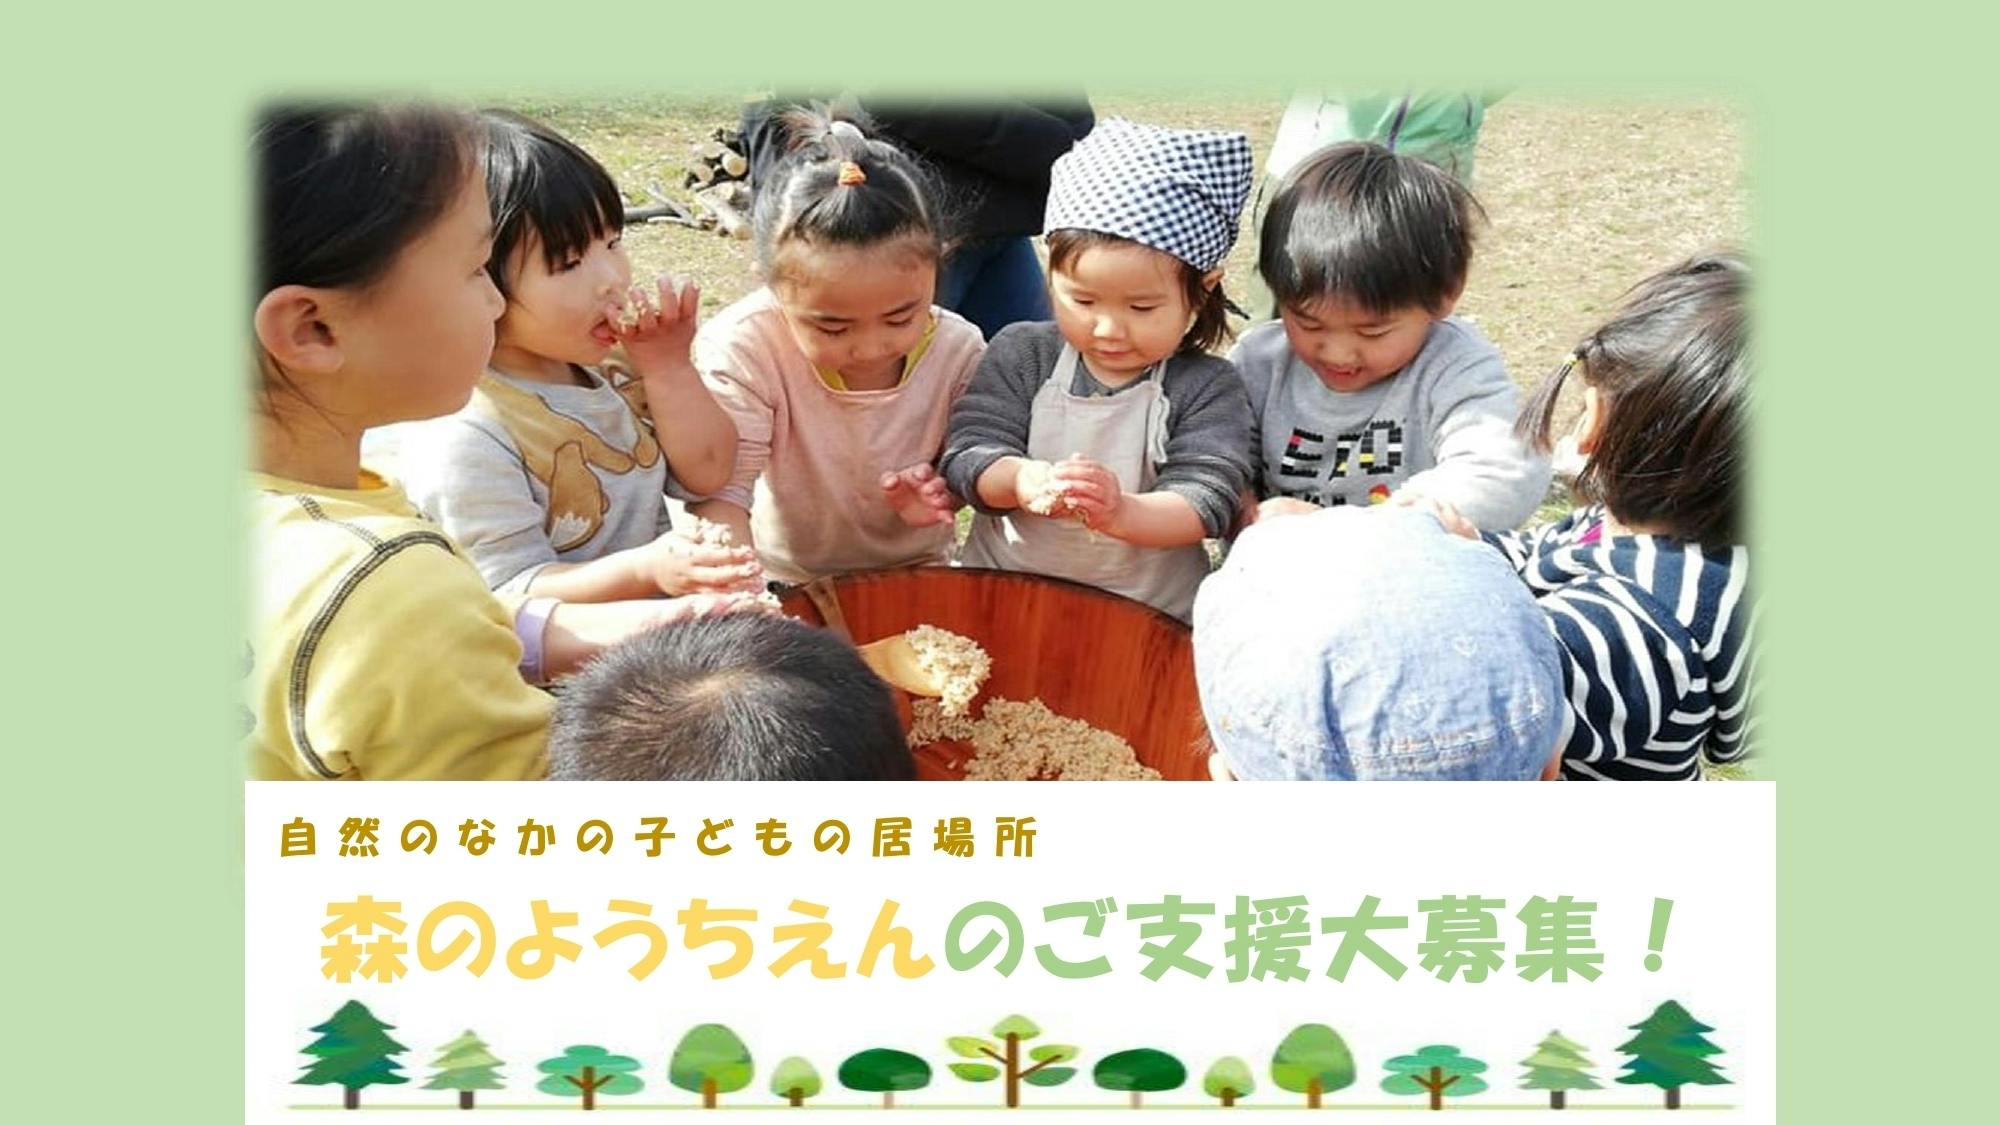 豊かな自然の中での保育「みやしろ森のようちえん」を埼玉県宮代町に設立します！　CAMPFIRE　(キャンプファイヤー)